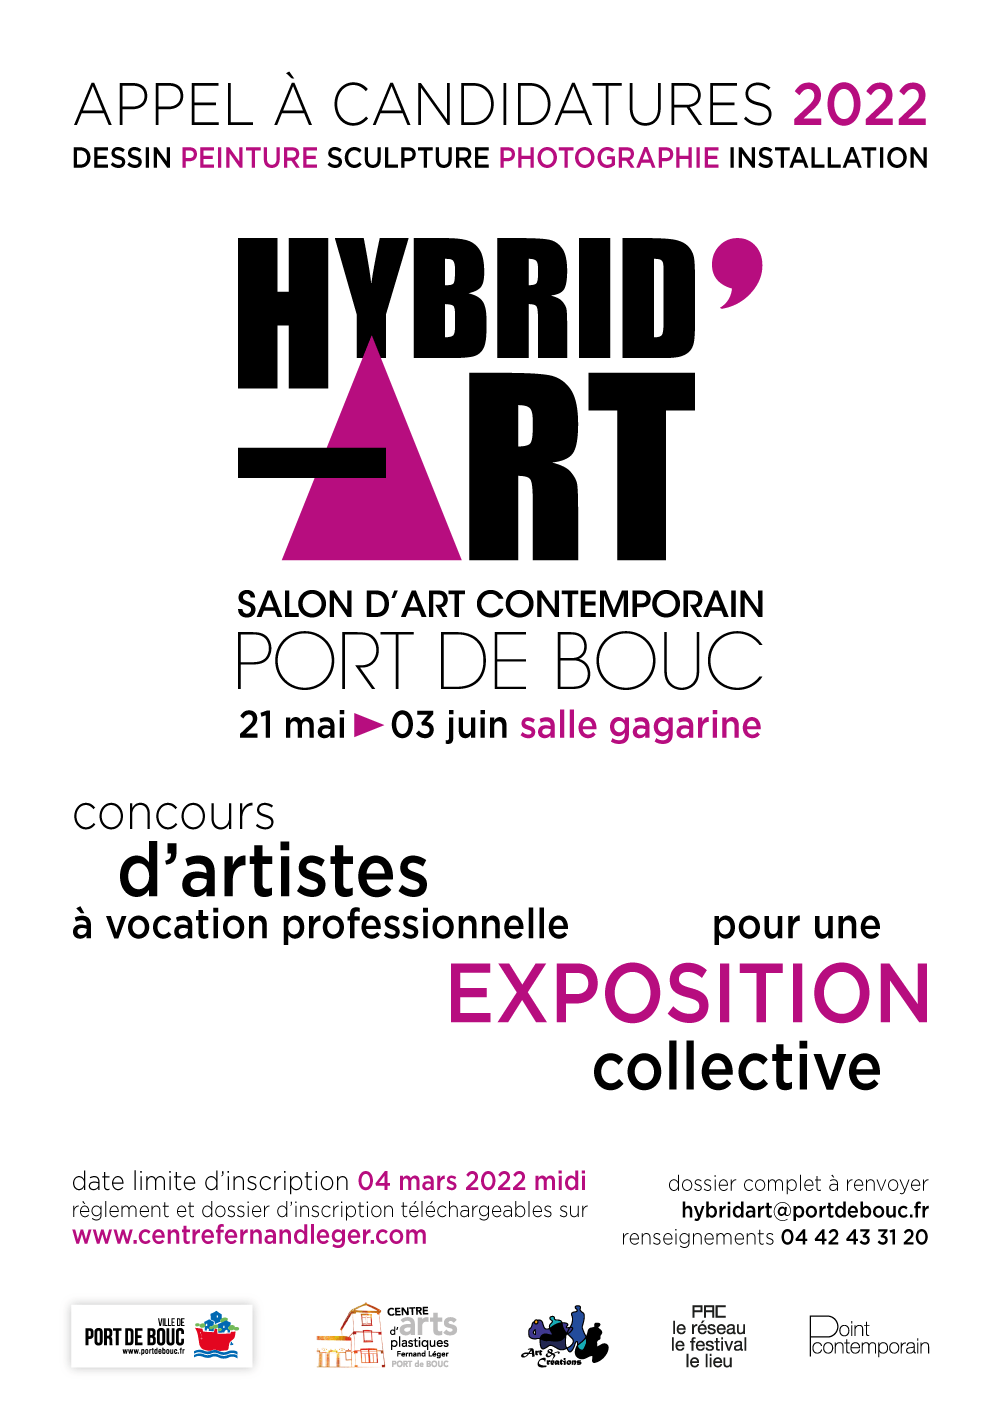 APPEL À CANDIDATURE HYBRID’ART 2022